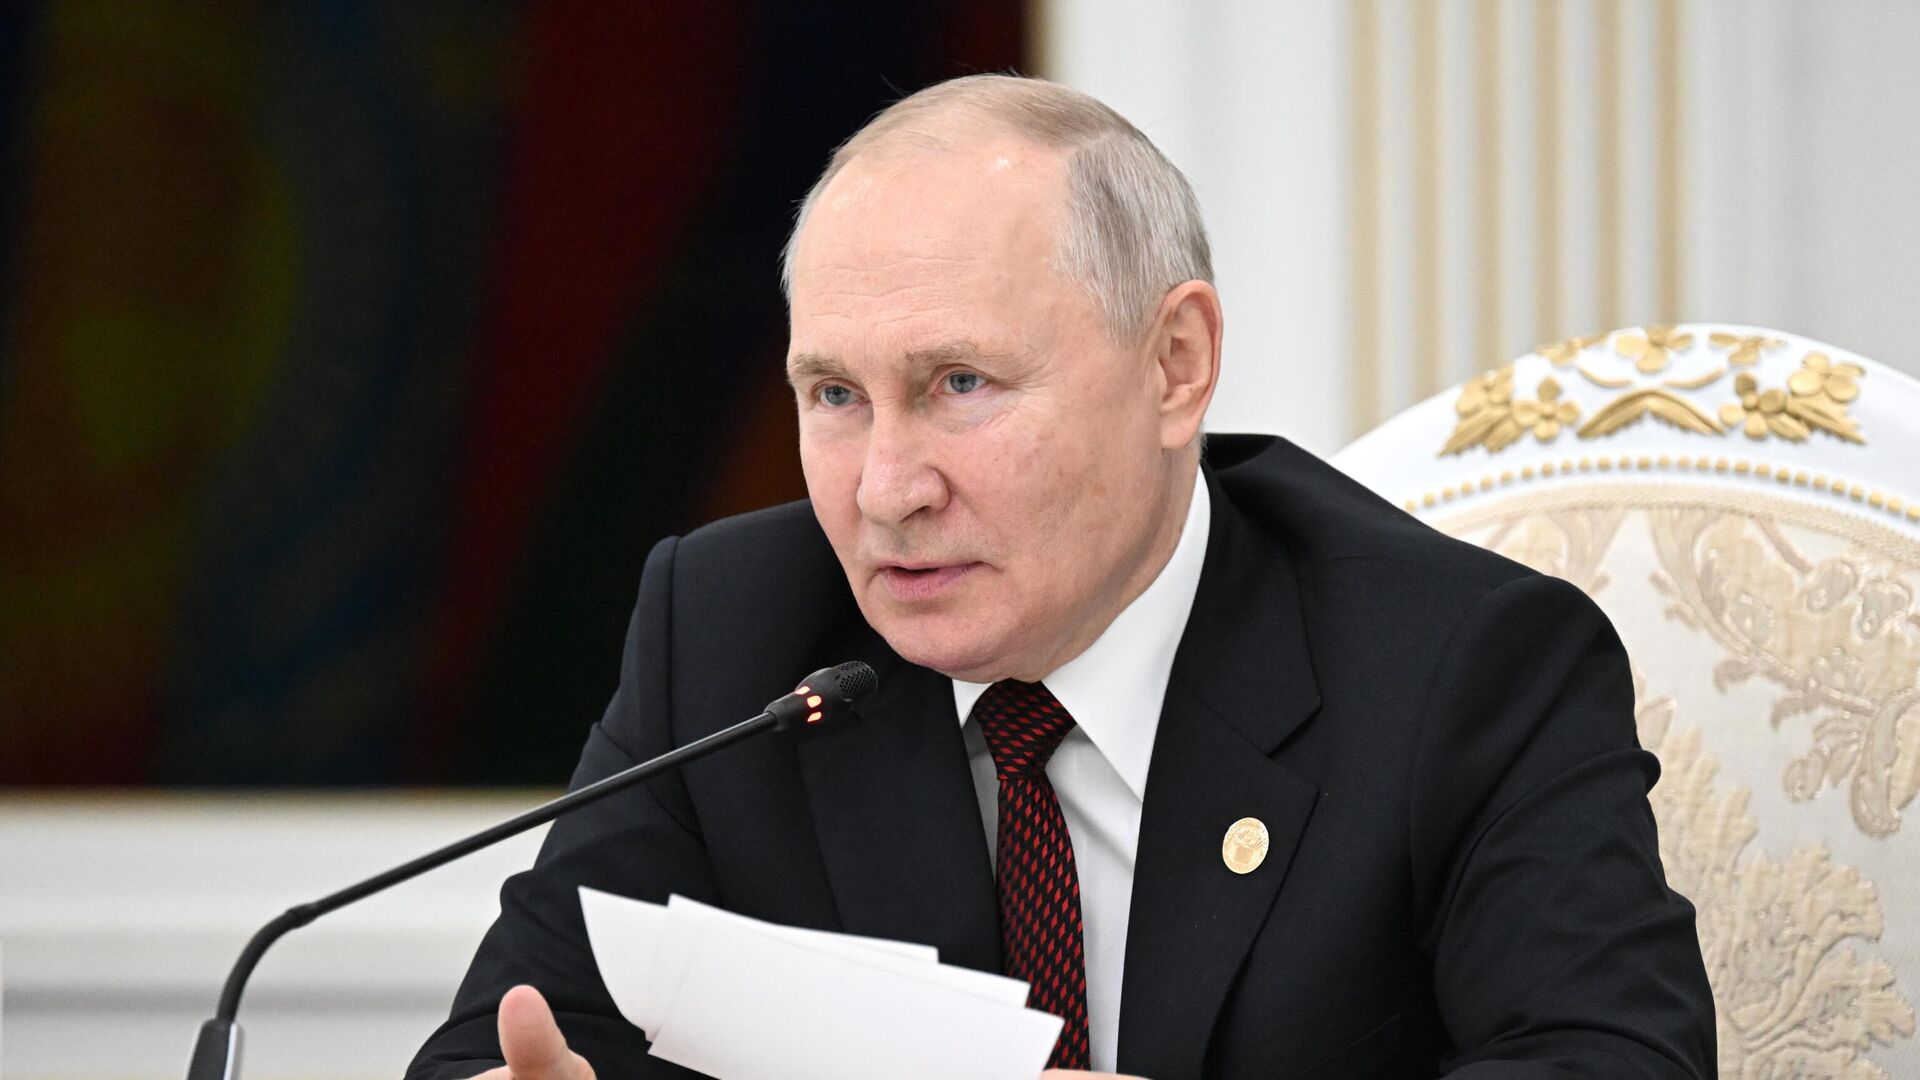 Классный руководитель Путина рассказала о школьных годах президента РФ